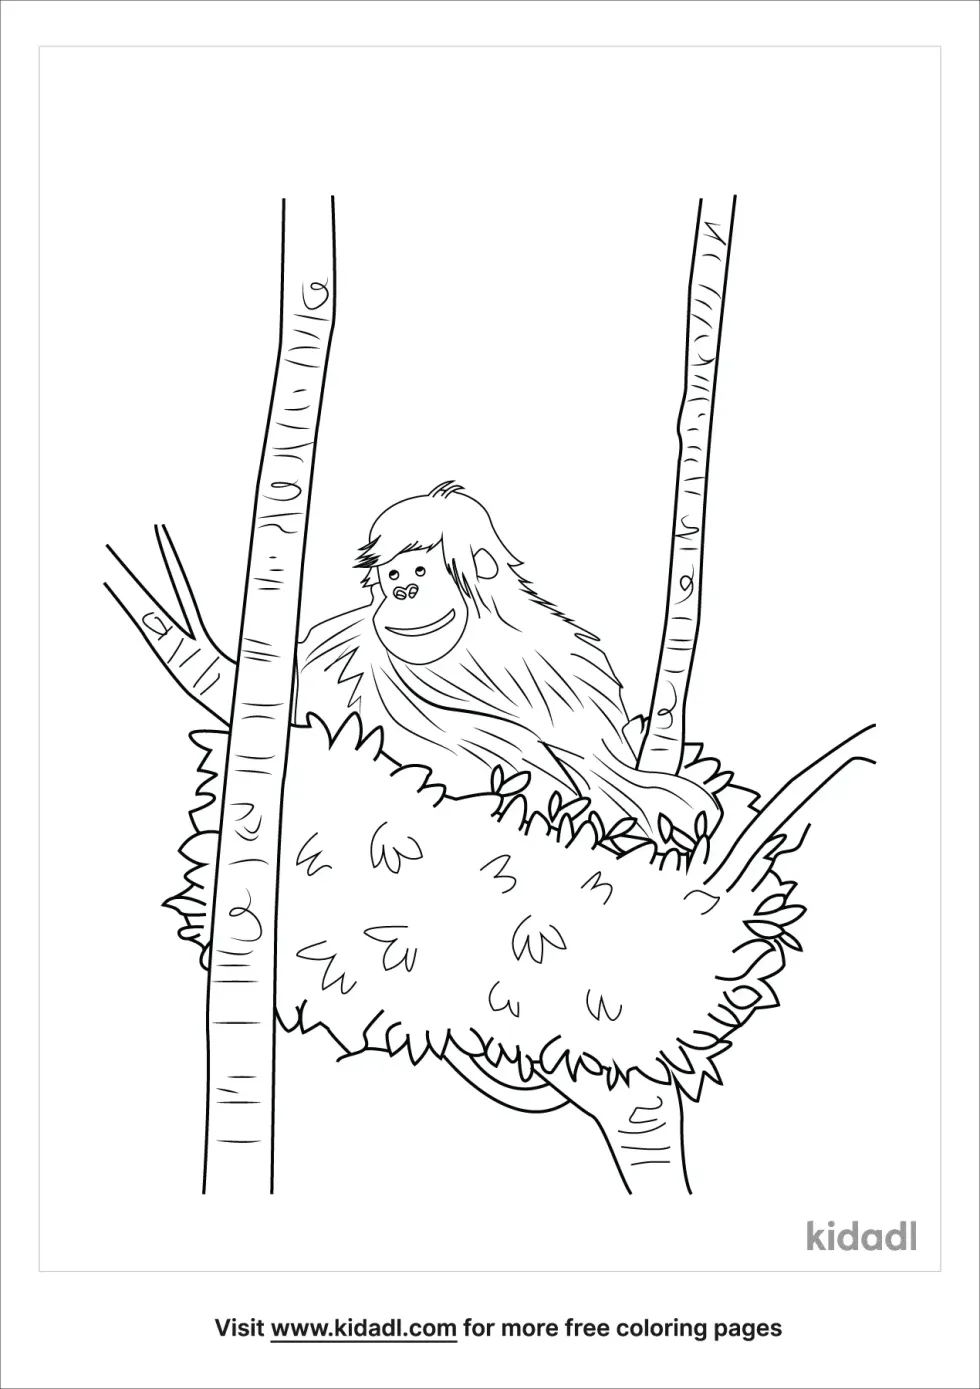 Nests Of Bornean Orangutan